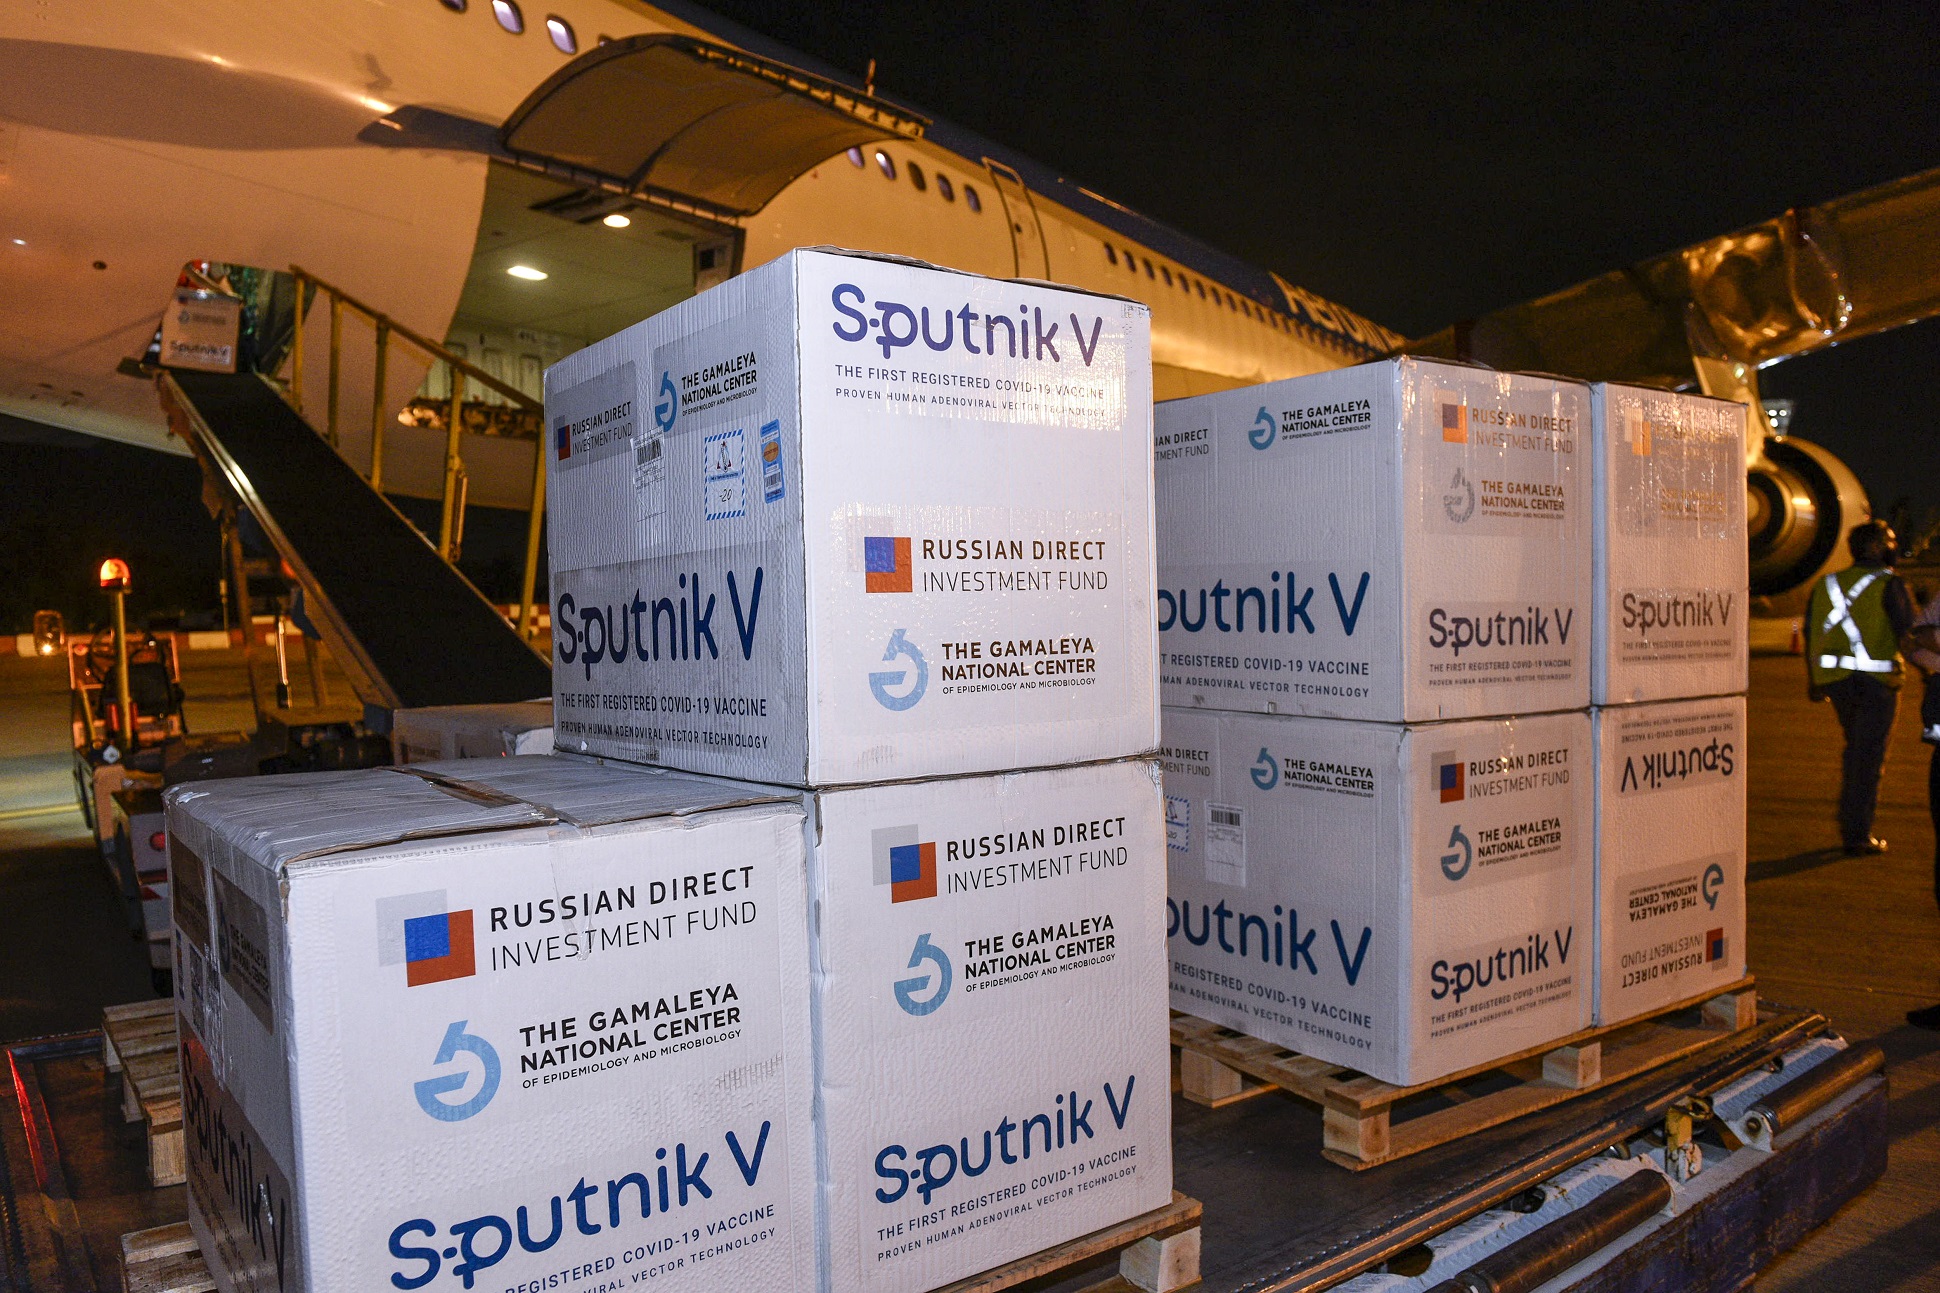 Coronavirus: Arribó el primer avión de Aerolíneas Argentinas con 517.500 dosis de la vacuna Sputnik V